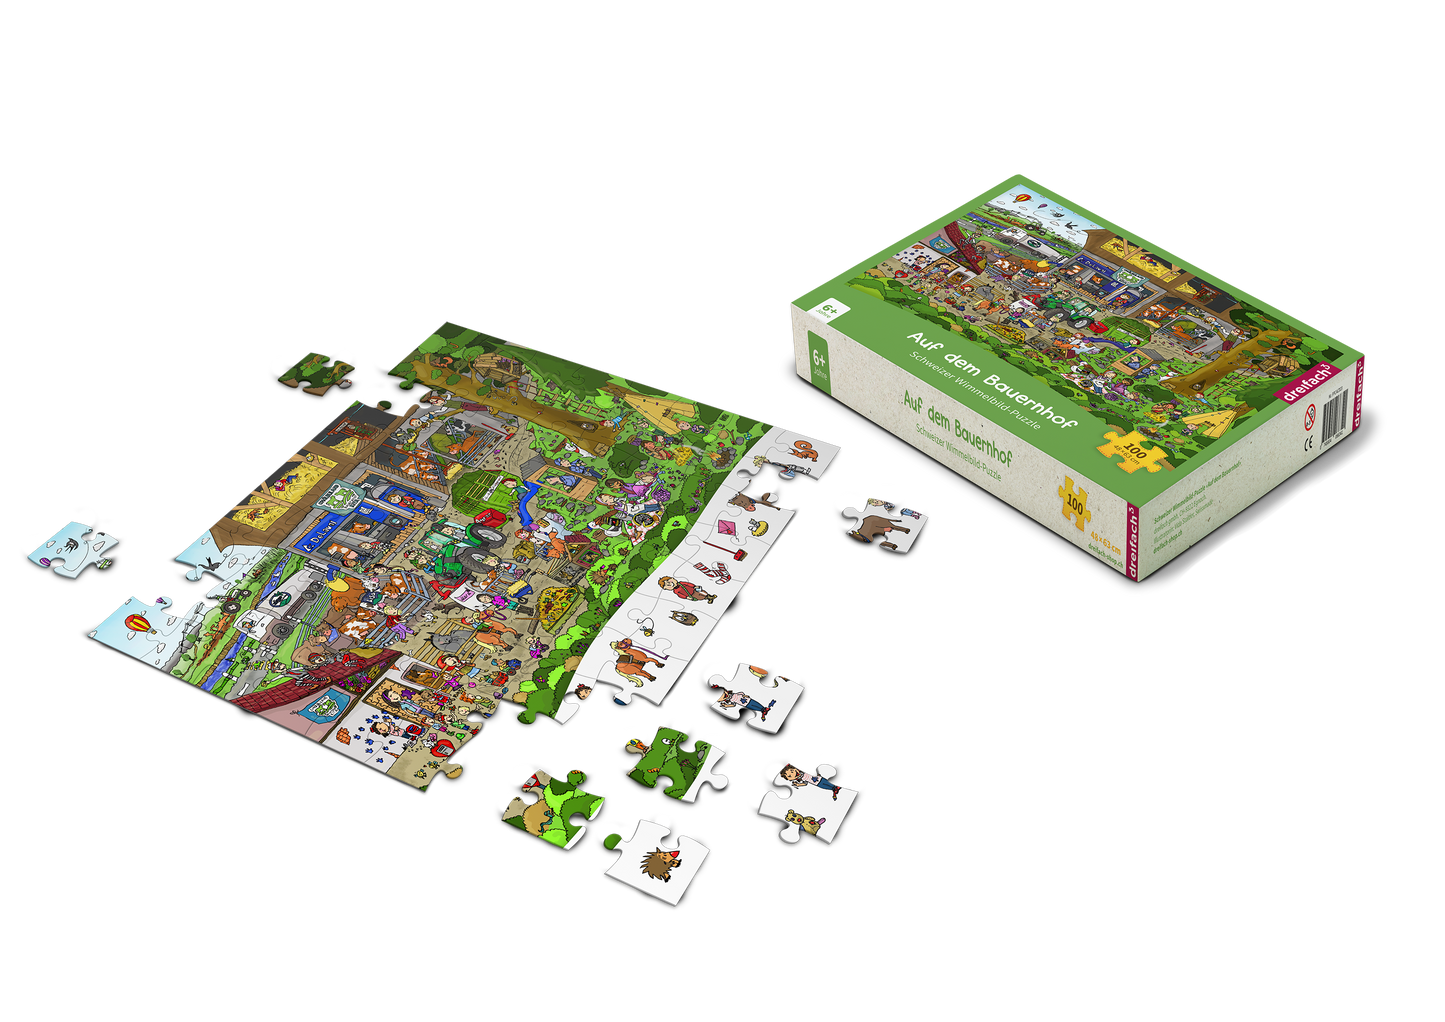 Bauernhof-Set mit Wimmelbuch und Puzzle